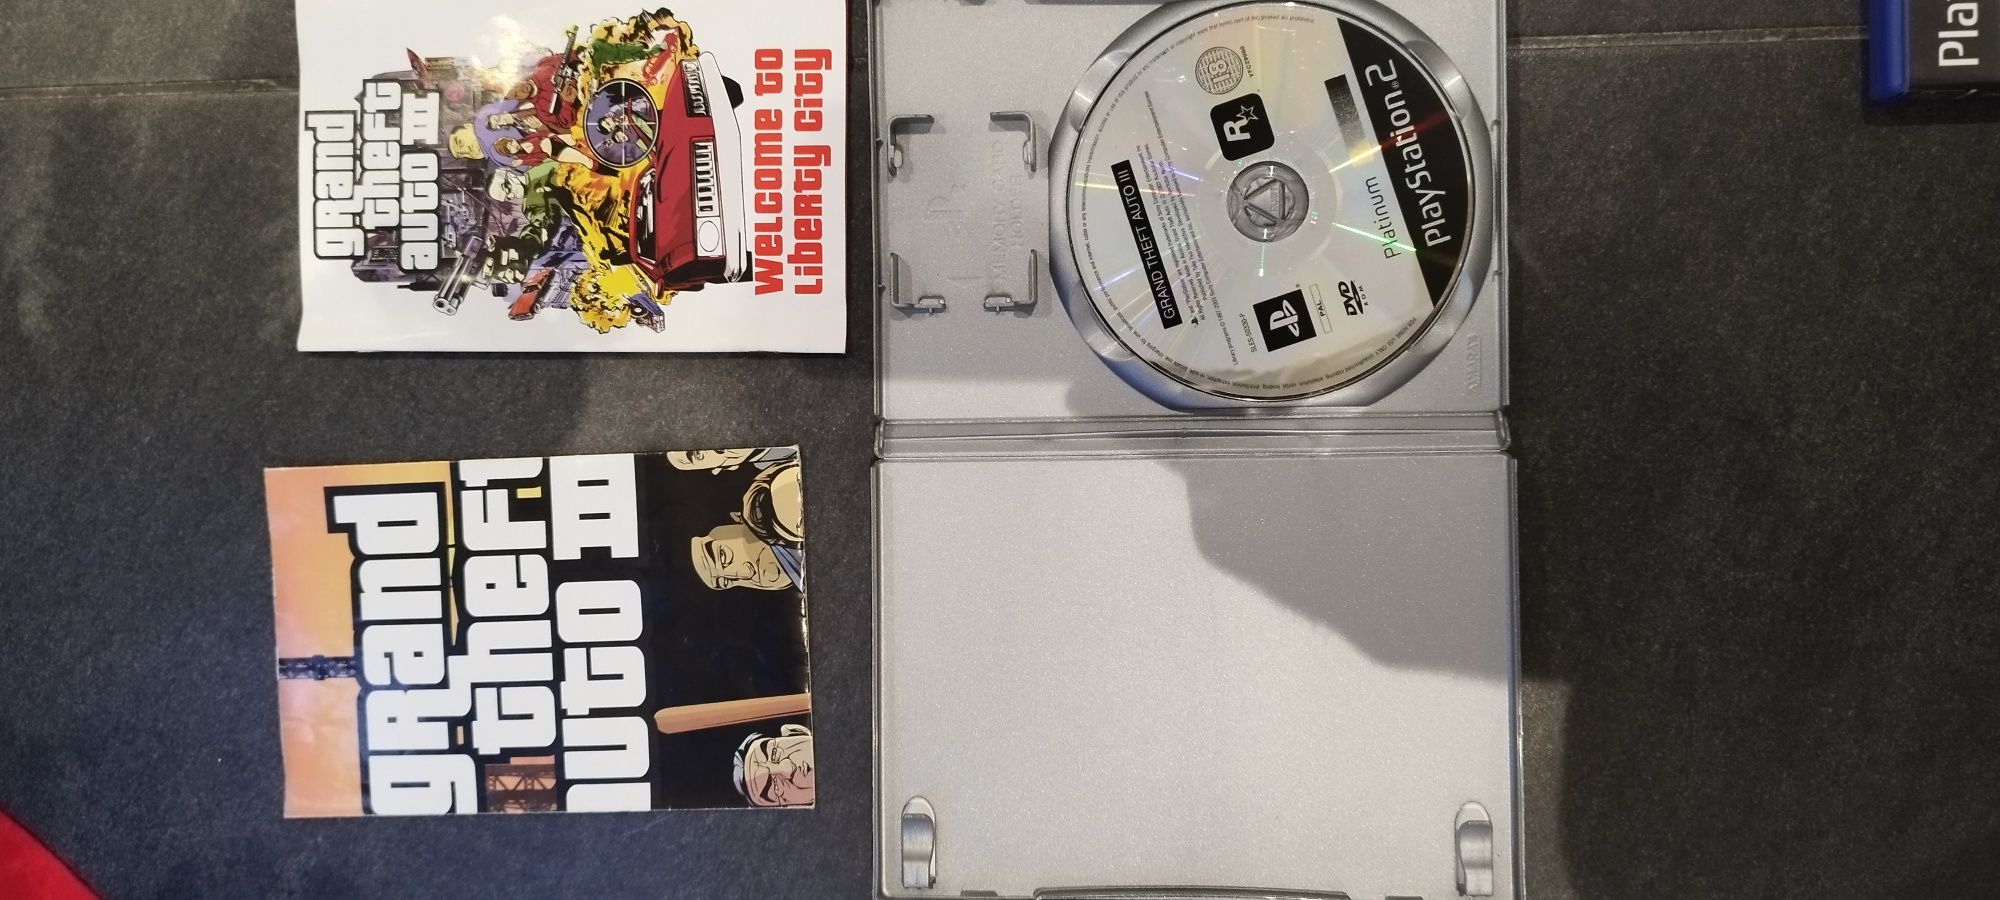 GTA coleção PlayStation 2